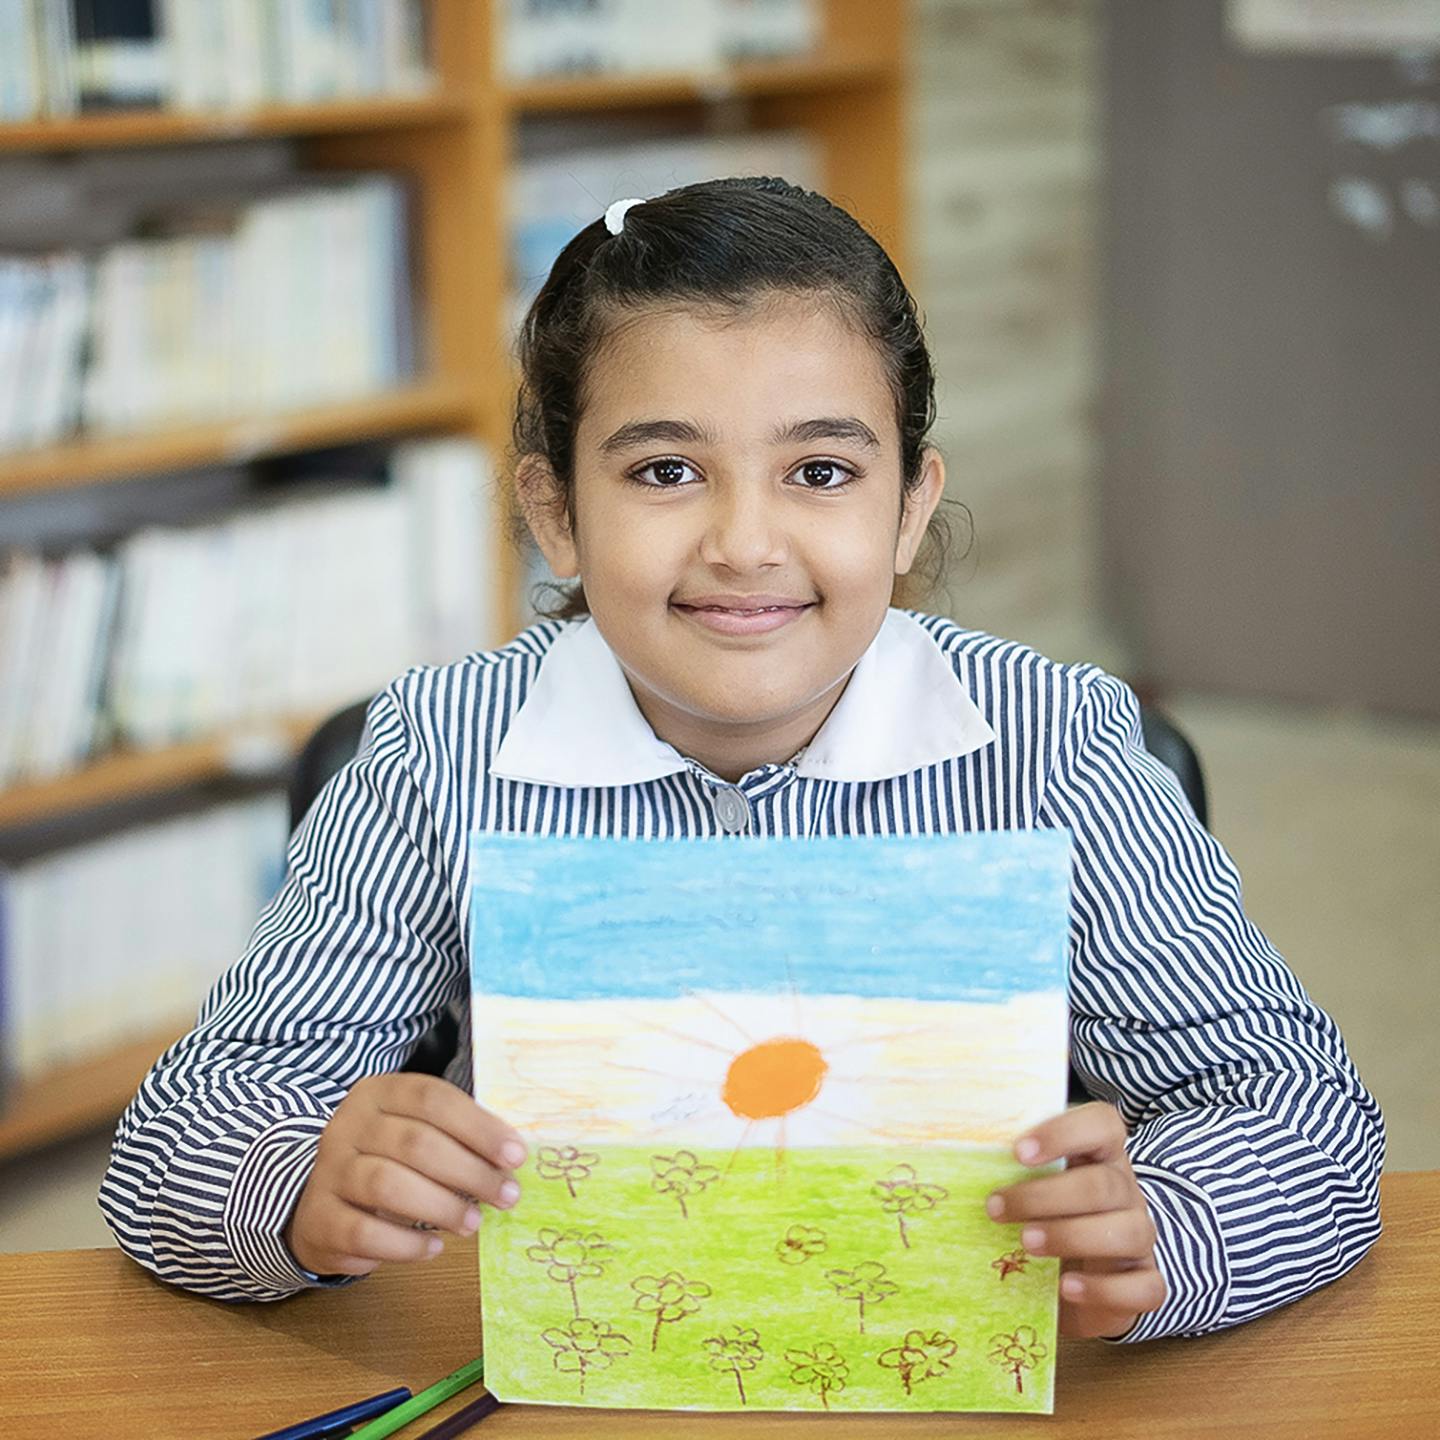 En flicka håller upp en teckning. Teckningen är en sol med himmel ovanför och gräs nedanför.